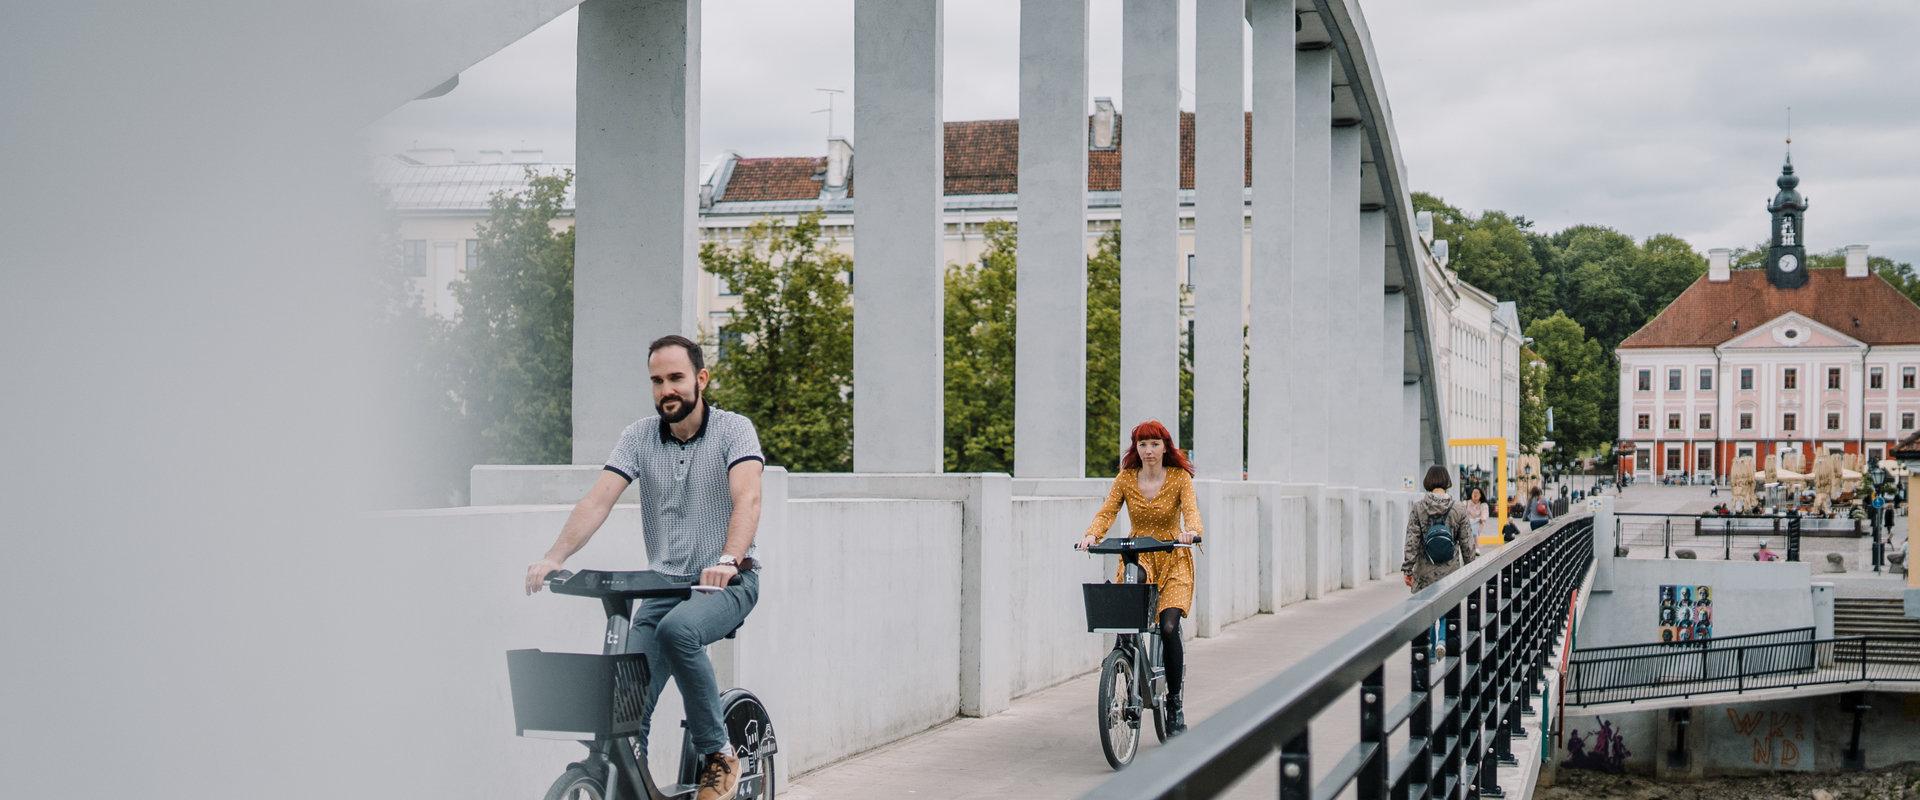 Sommerliche Bogenbrücke und auf Rädern des Tartuer Fahrradverleihs fahrende Jugendliche